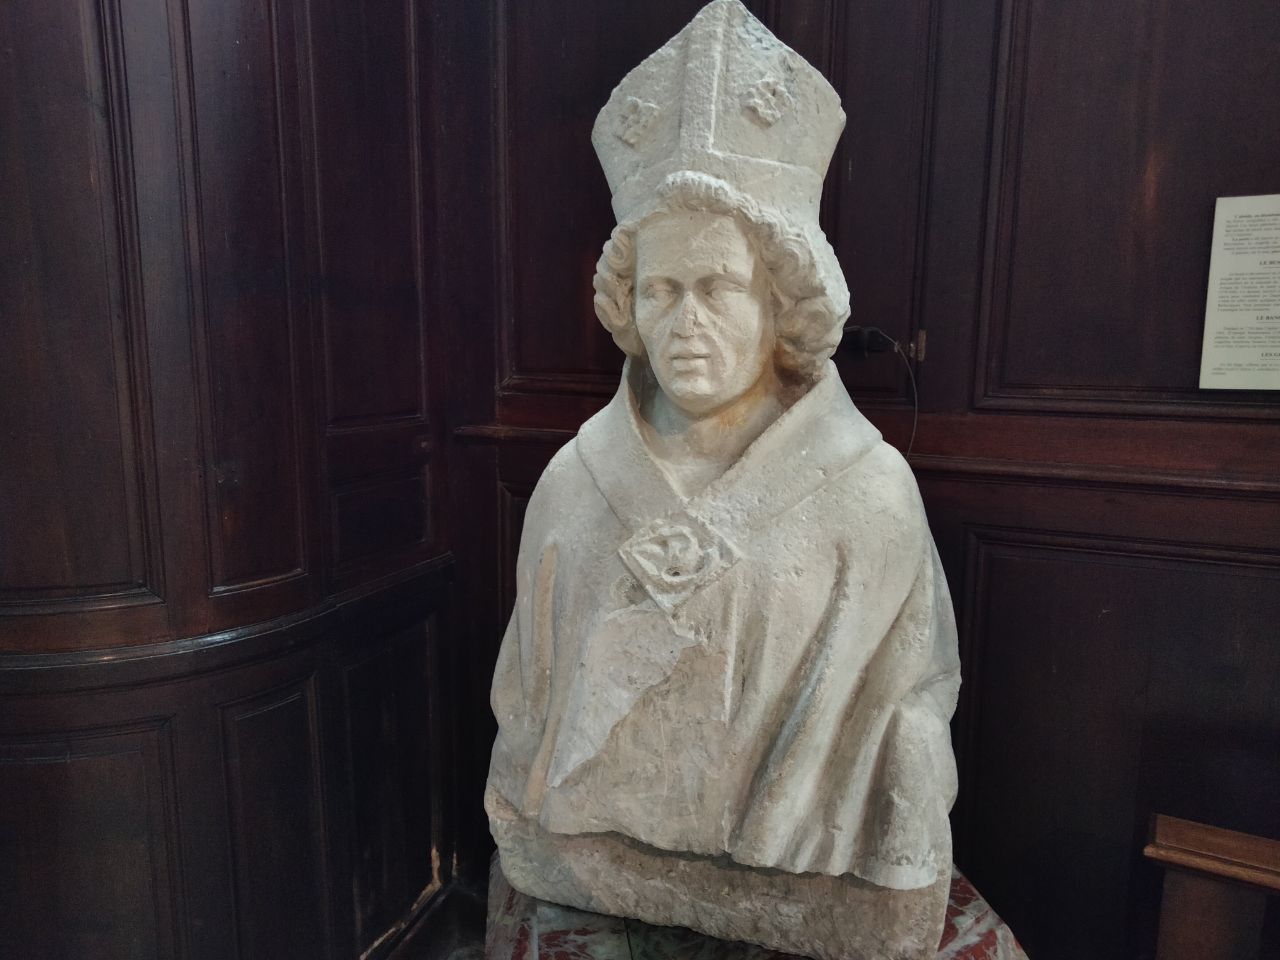 St Germain évêque d'Auxerre